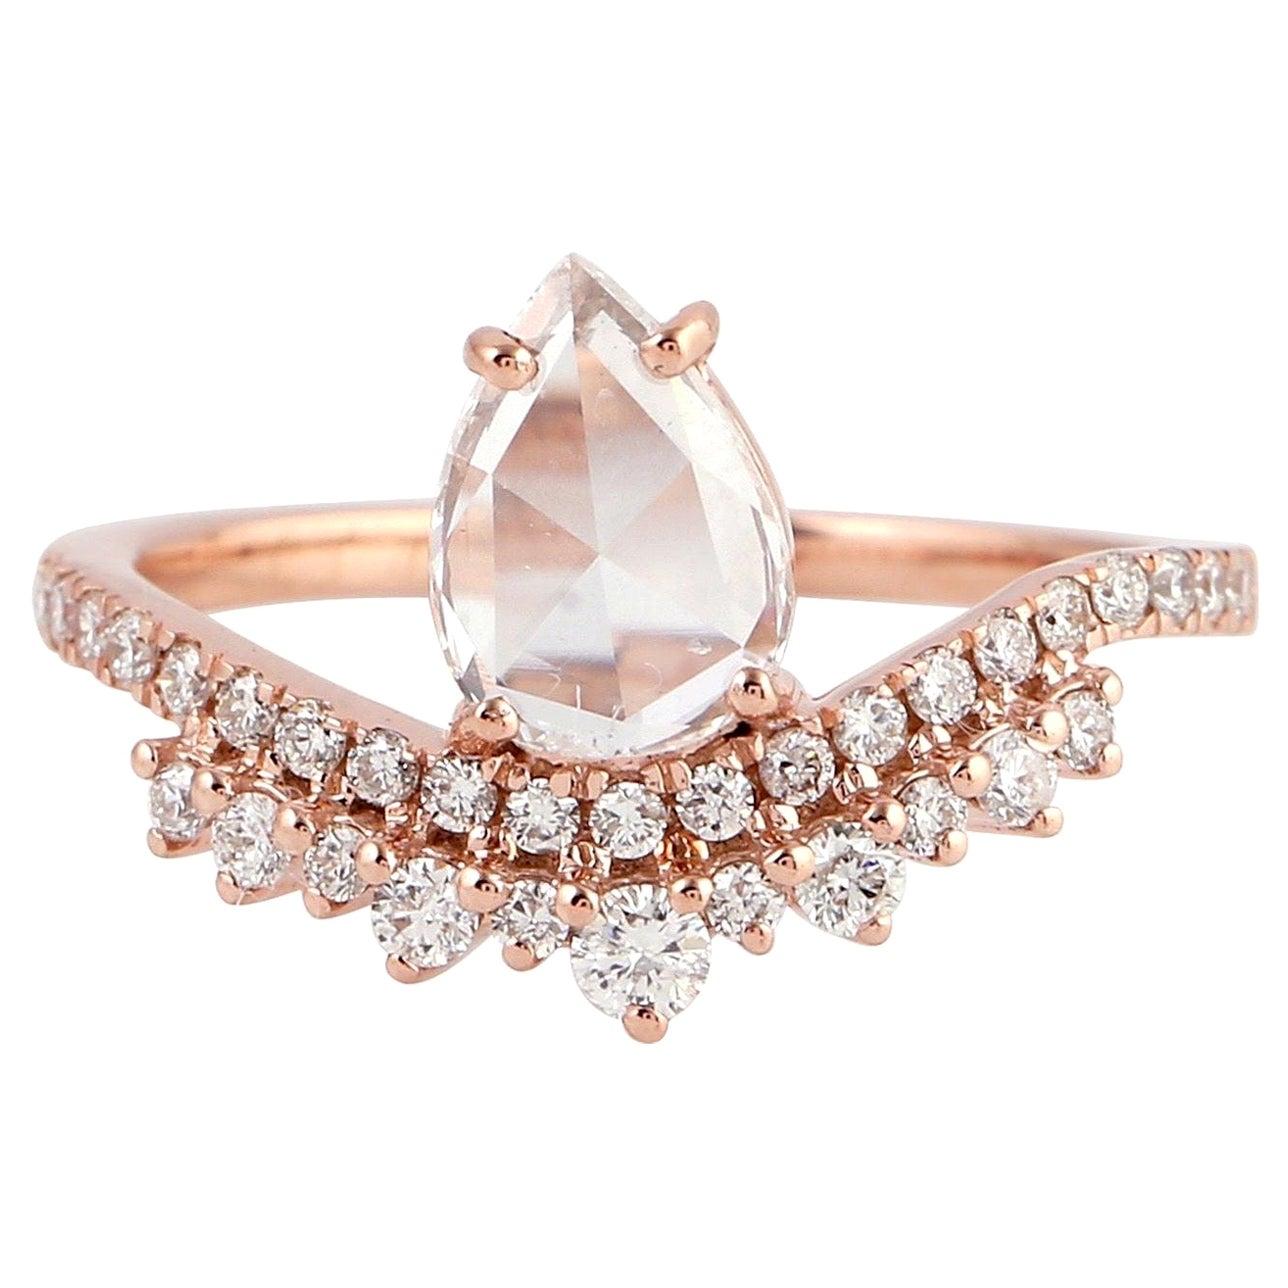 Fancy Diamond 18 Karat Gold Engagement Ring